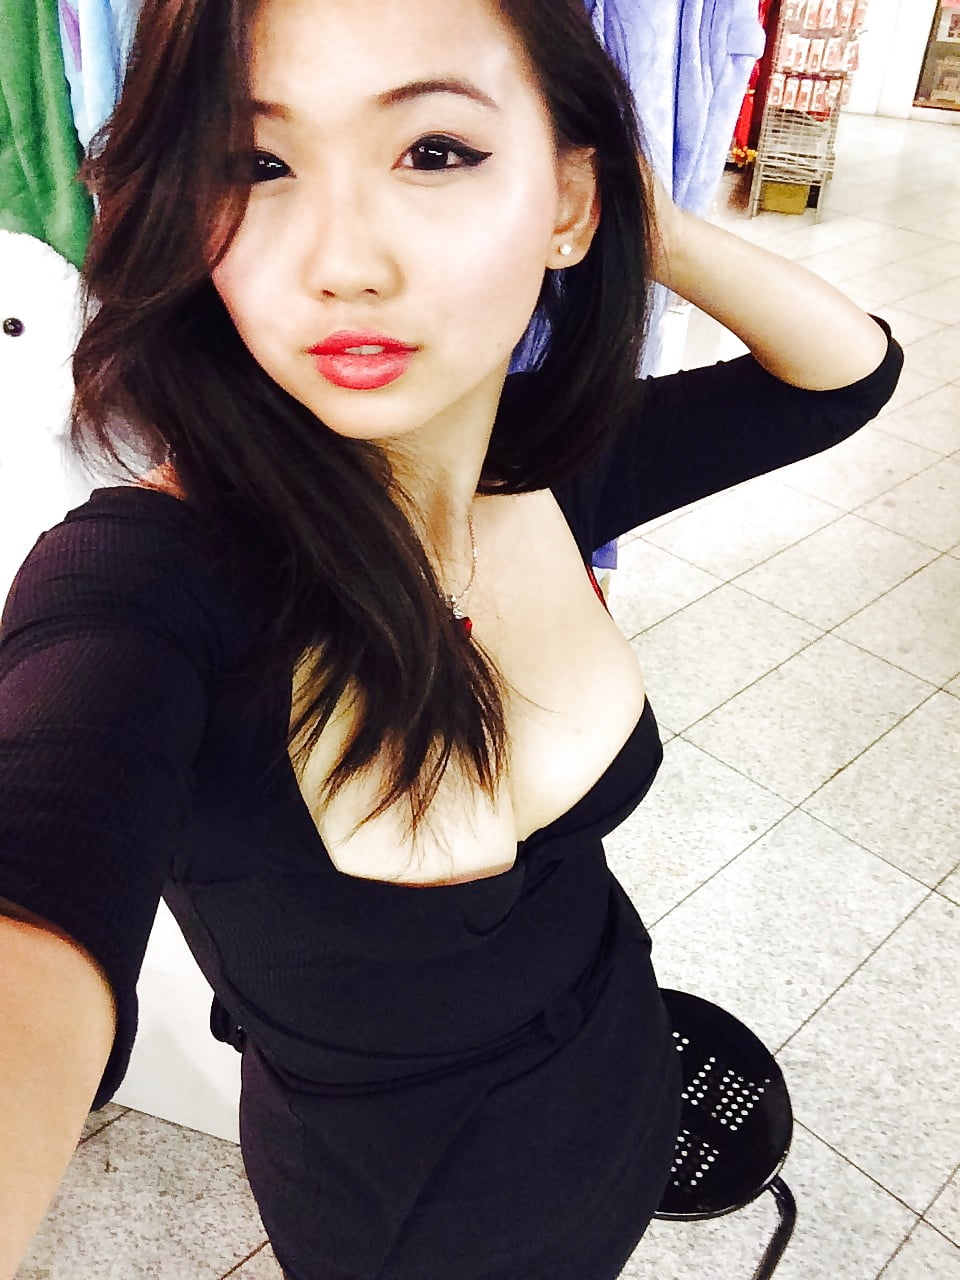 Asian Nerdy Teen Slut aka HarrietSugarcookie Selfies porn gallery